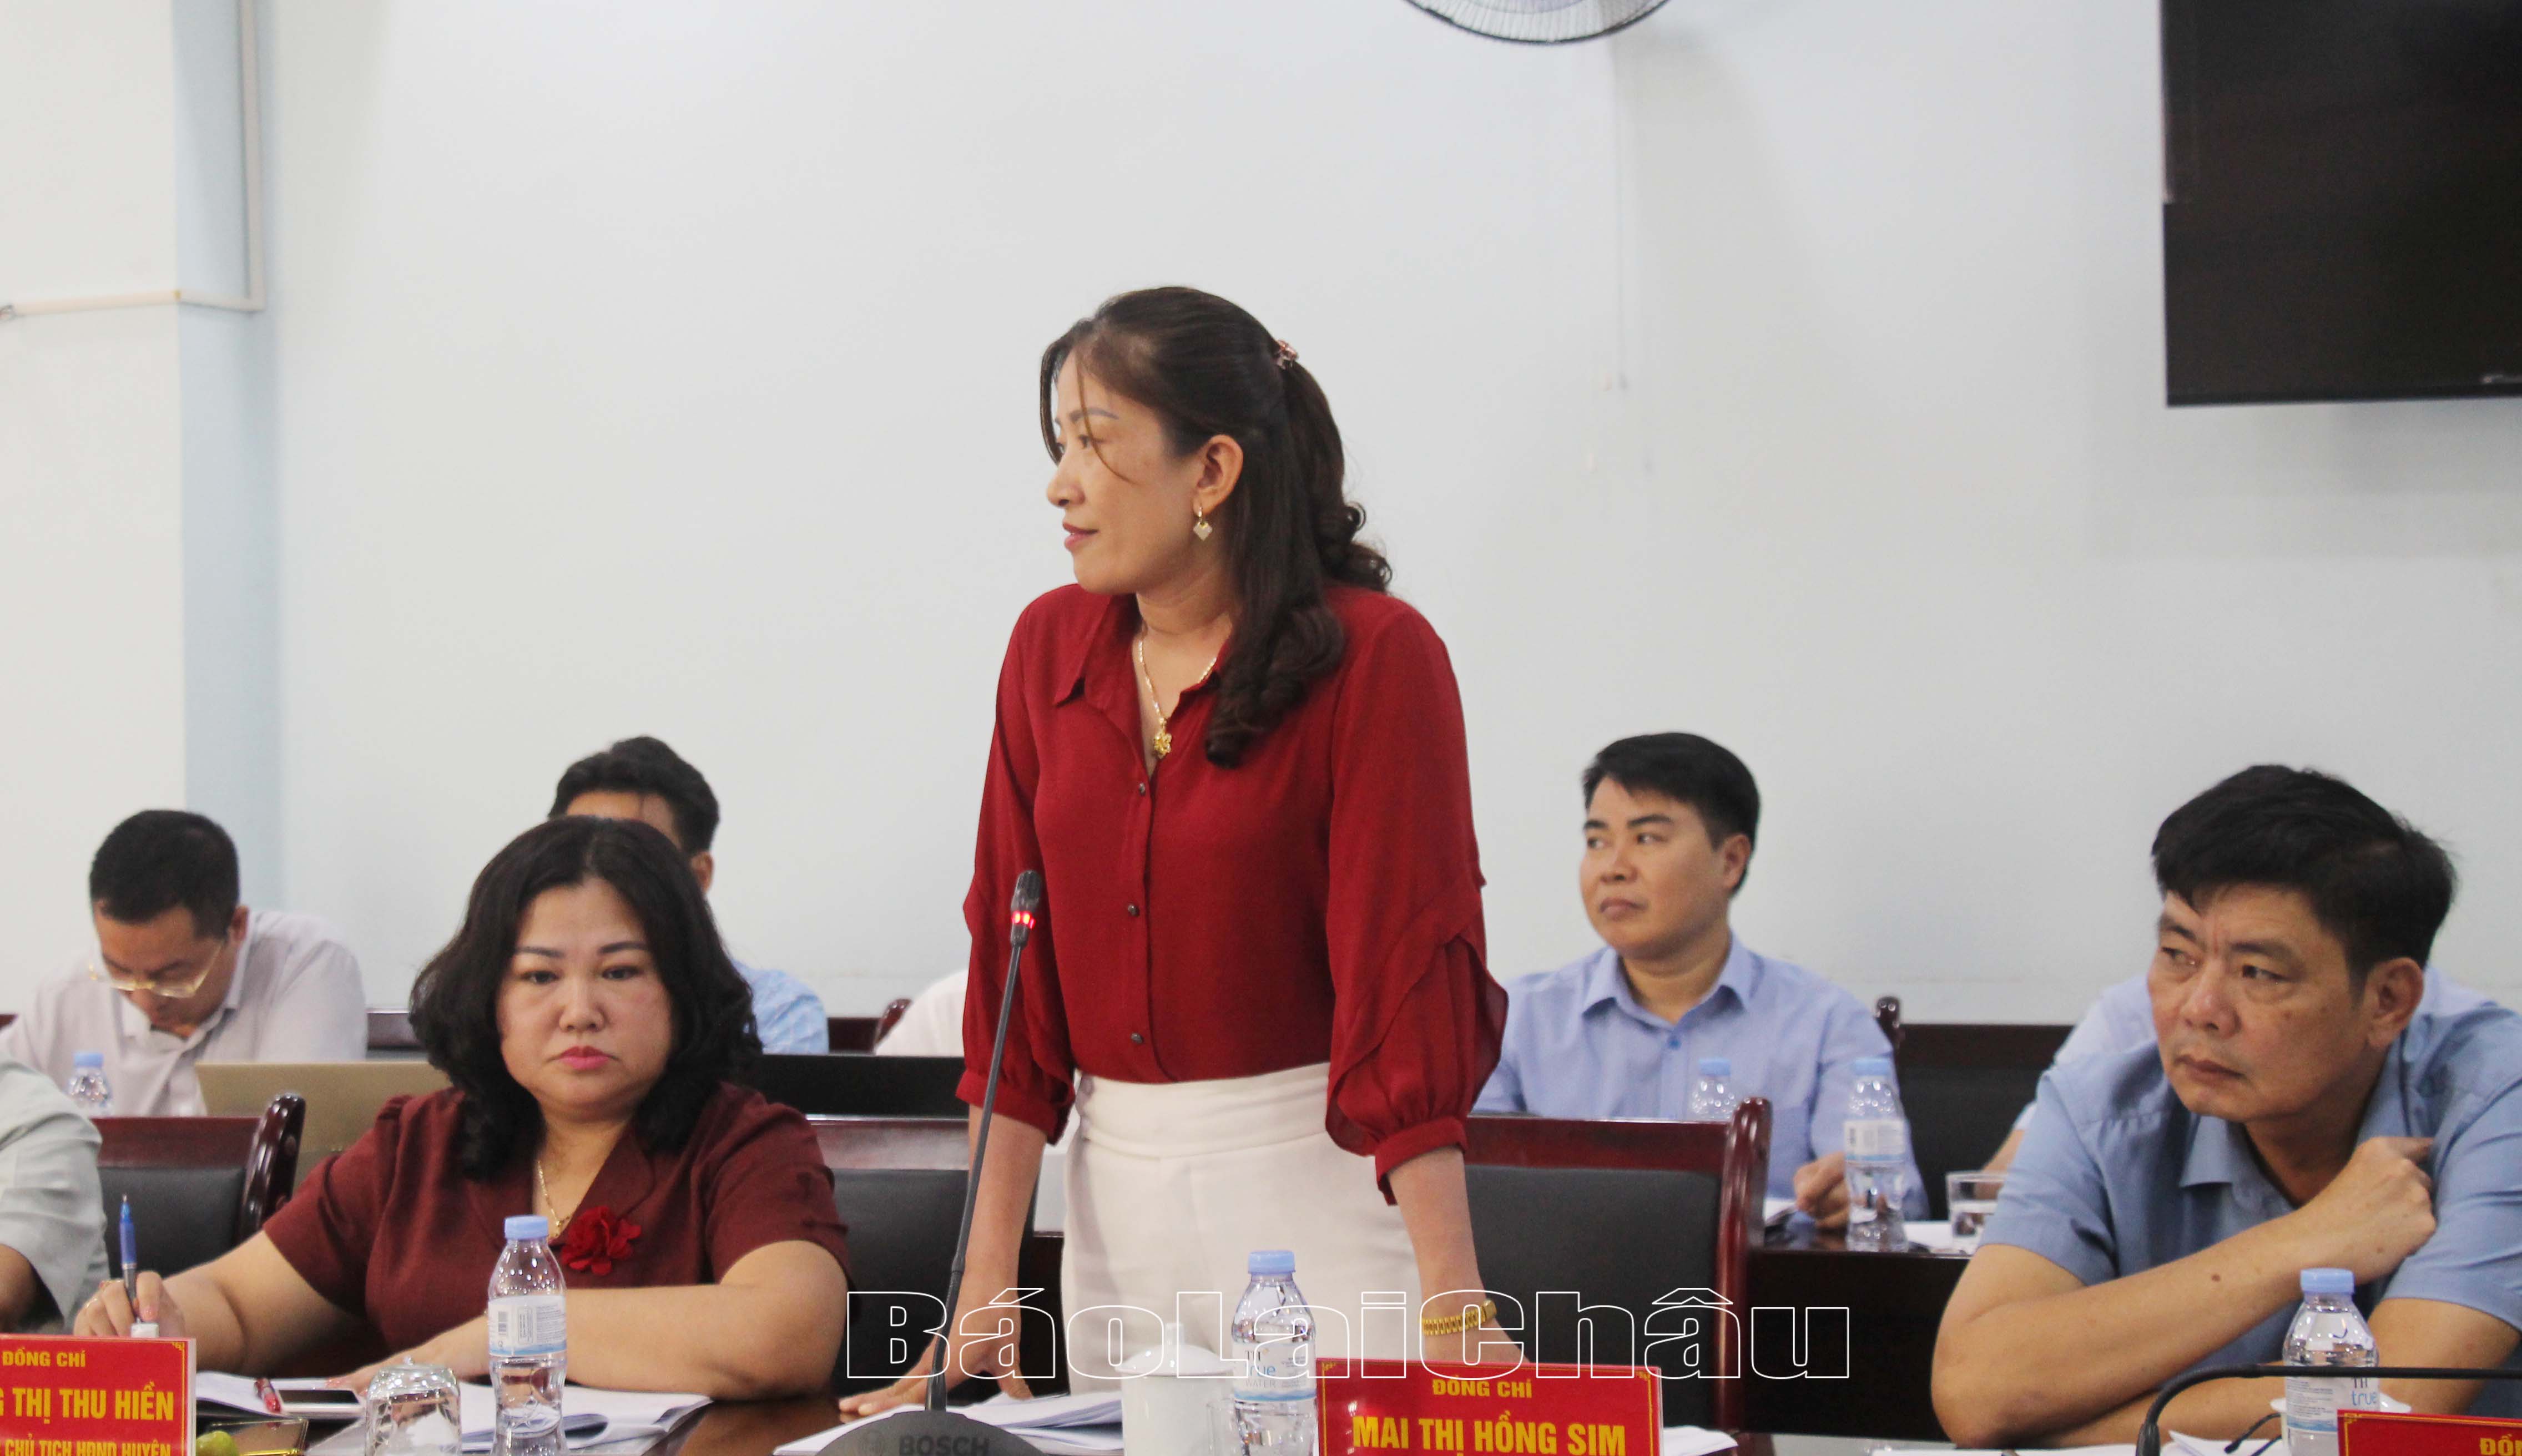 Đồng chí Mai Thị Hồng Sim – Phó Chủ tịch UBND huyện Phong Thổ chia sẻ thêm về việc thực hiện hỗ trợ làm nhà ở trên địa bàn huyện. 